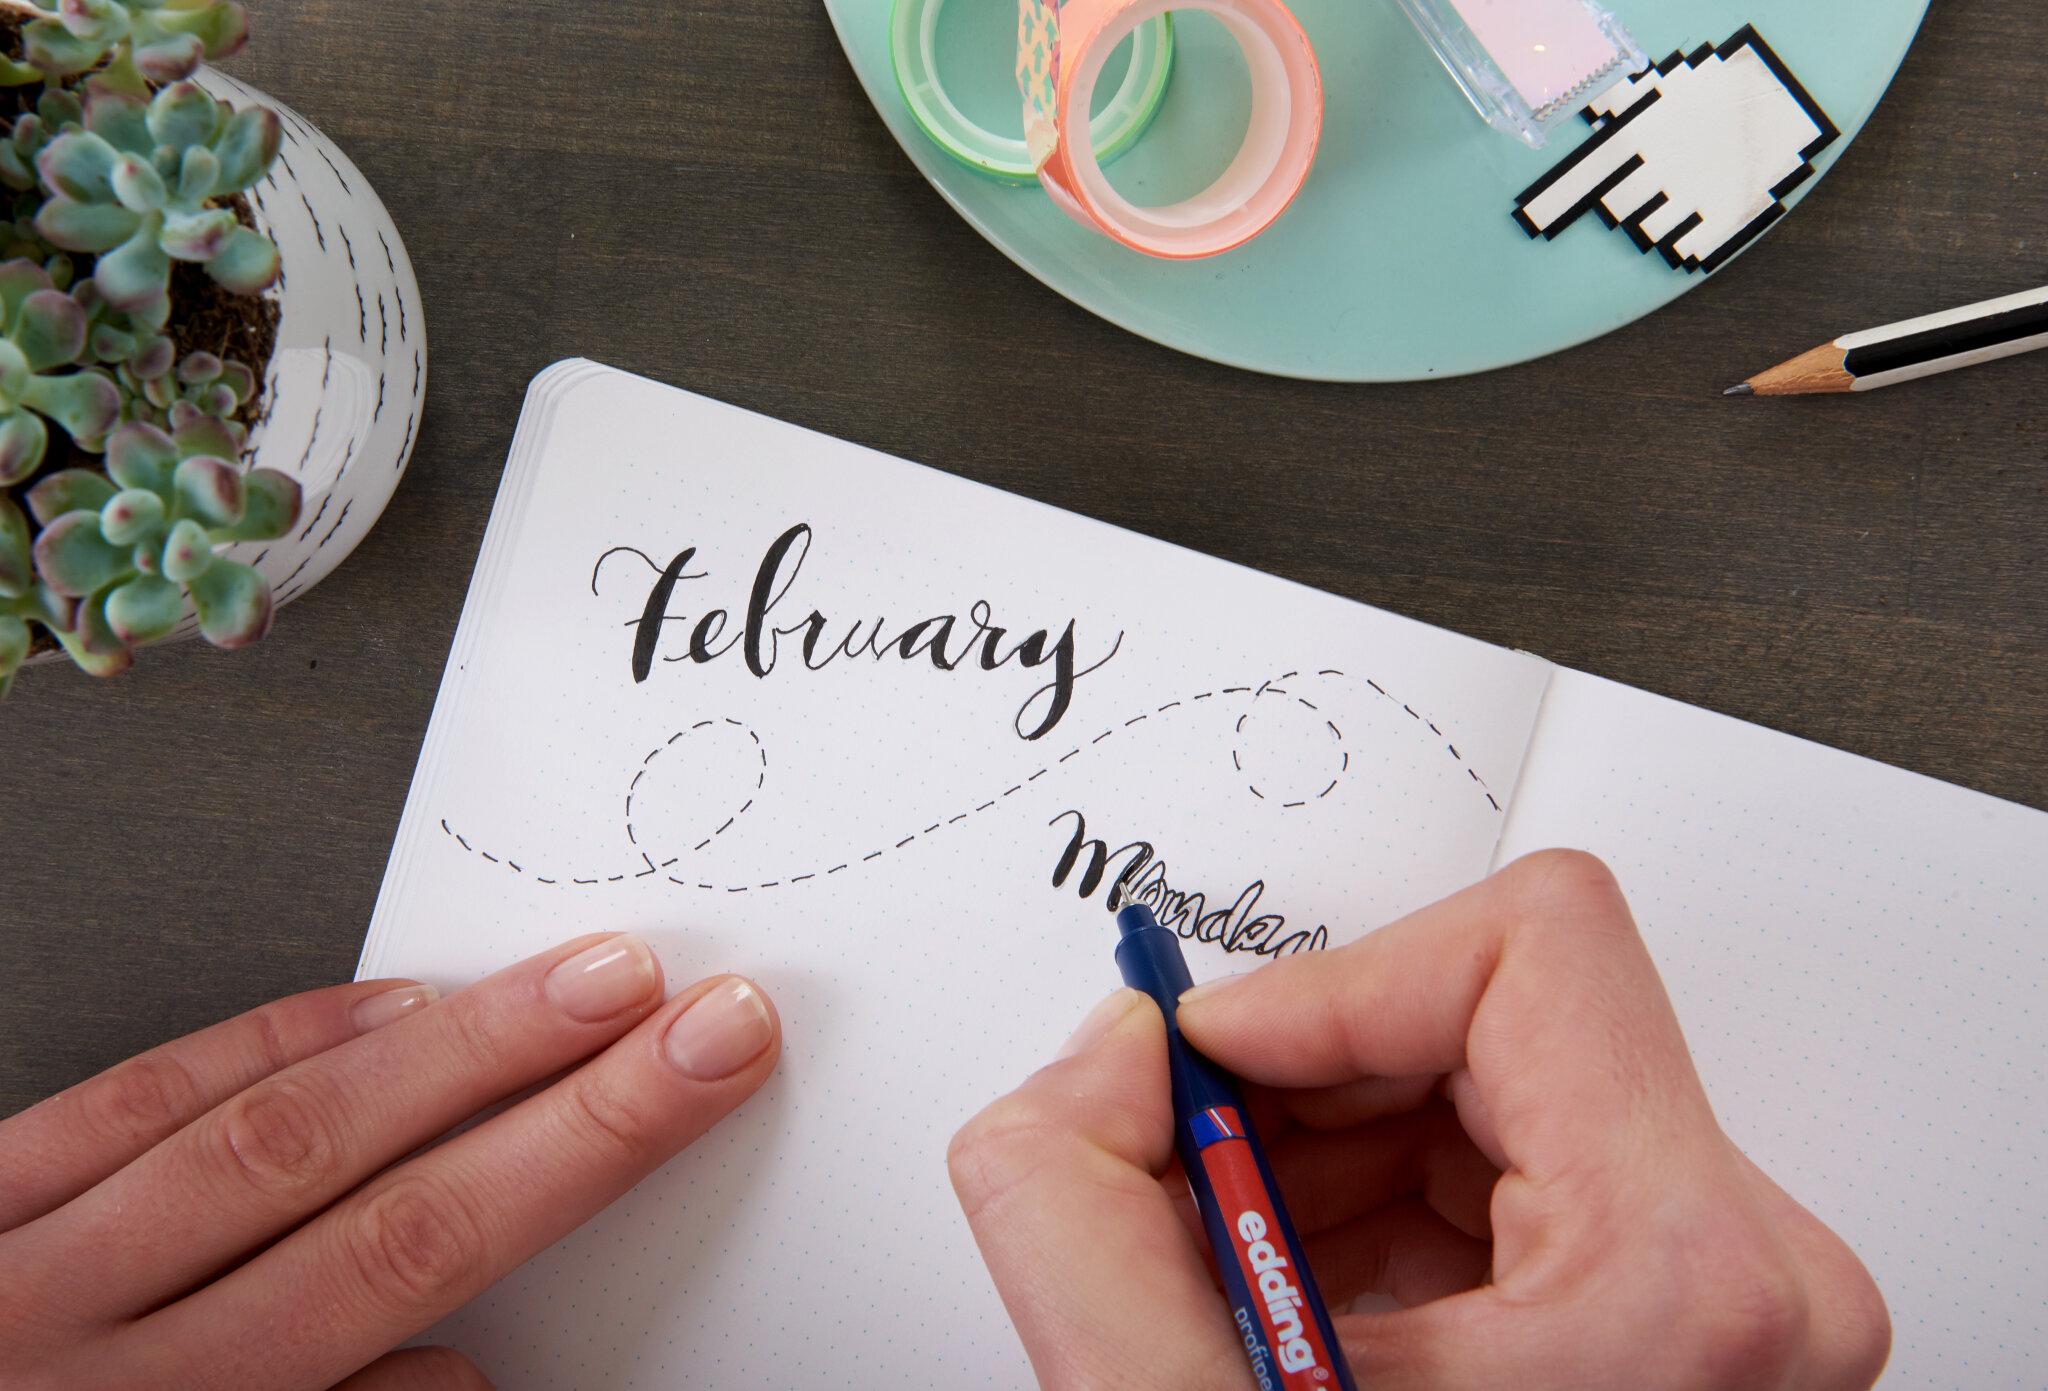 Eine Person übt kreatives Handlettering in einem Notizbuch, wobei das Wort „Februar“ in eleganter Schrift mit einem edding Fineliner geschrieben ist.